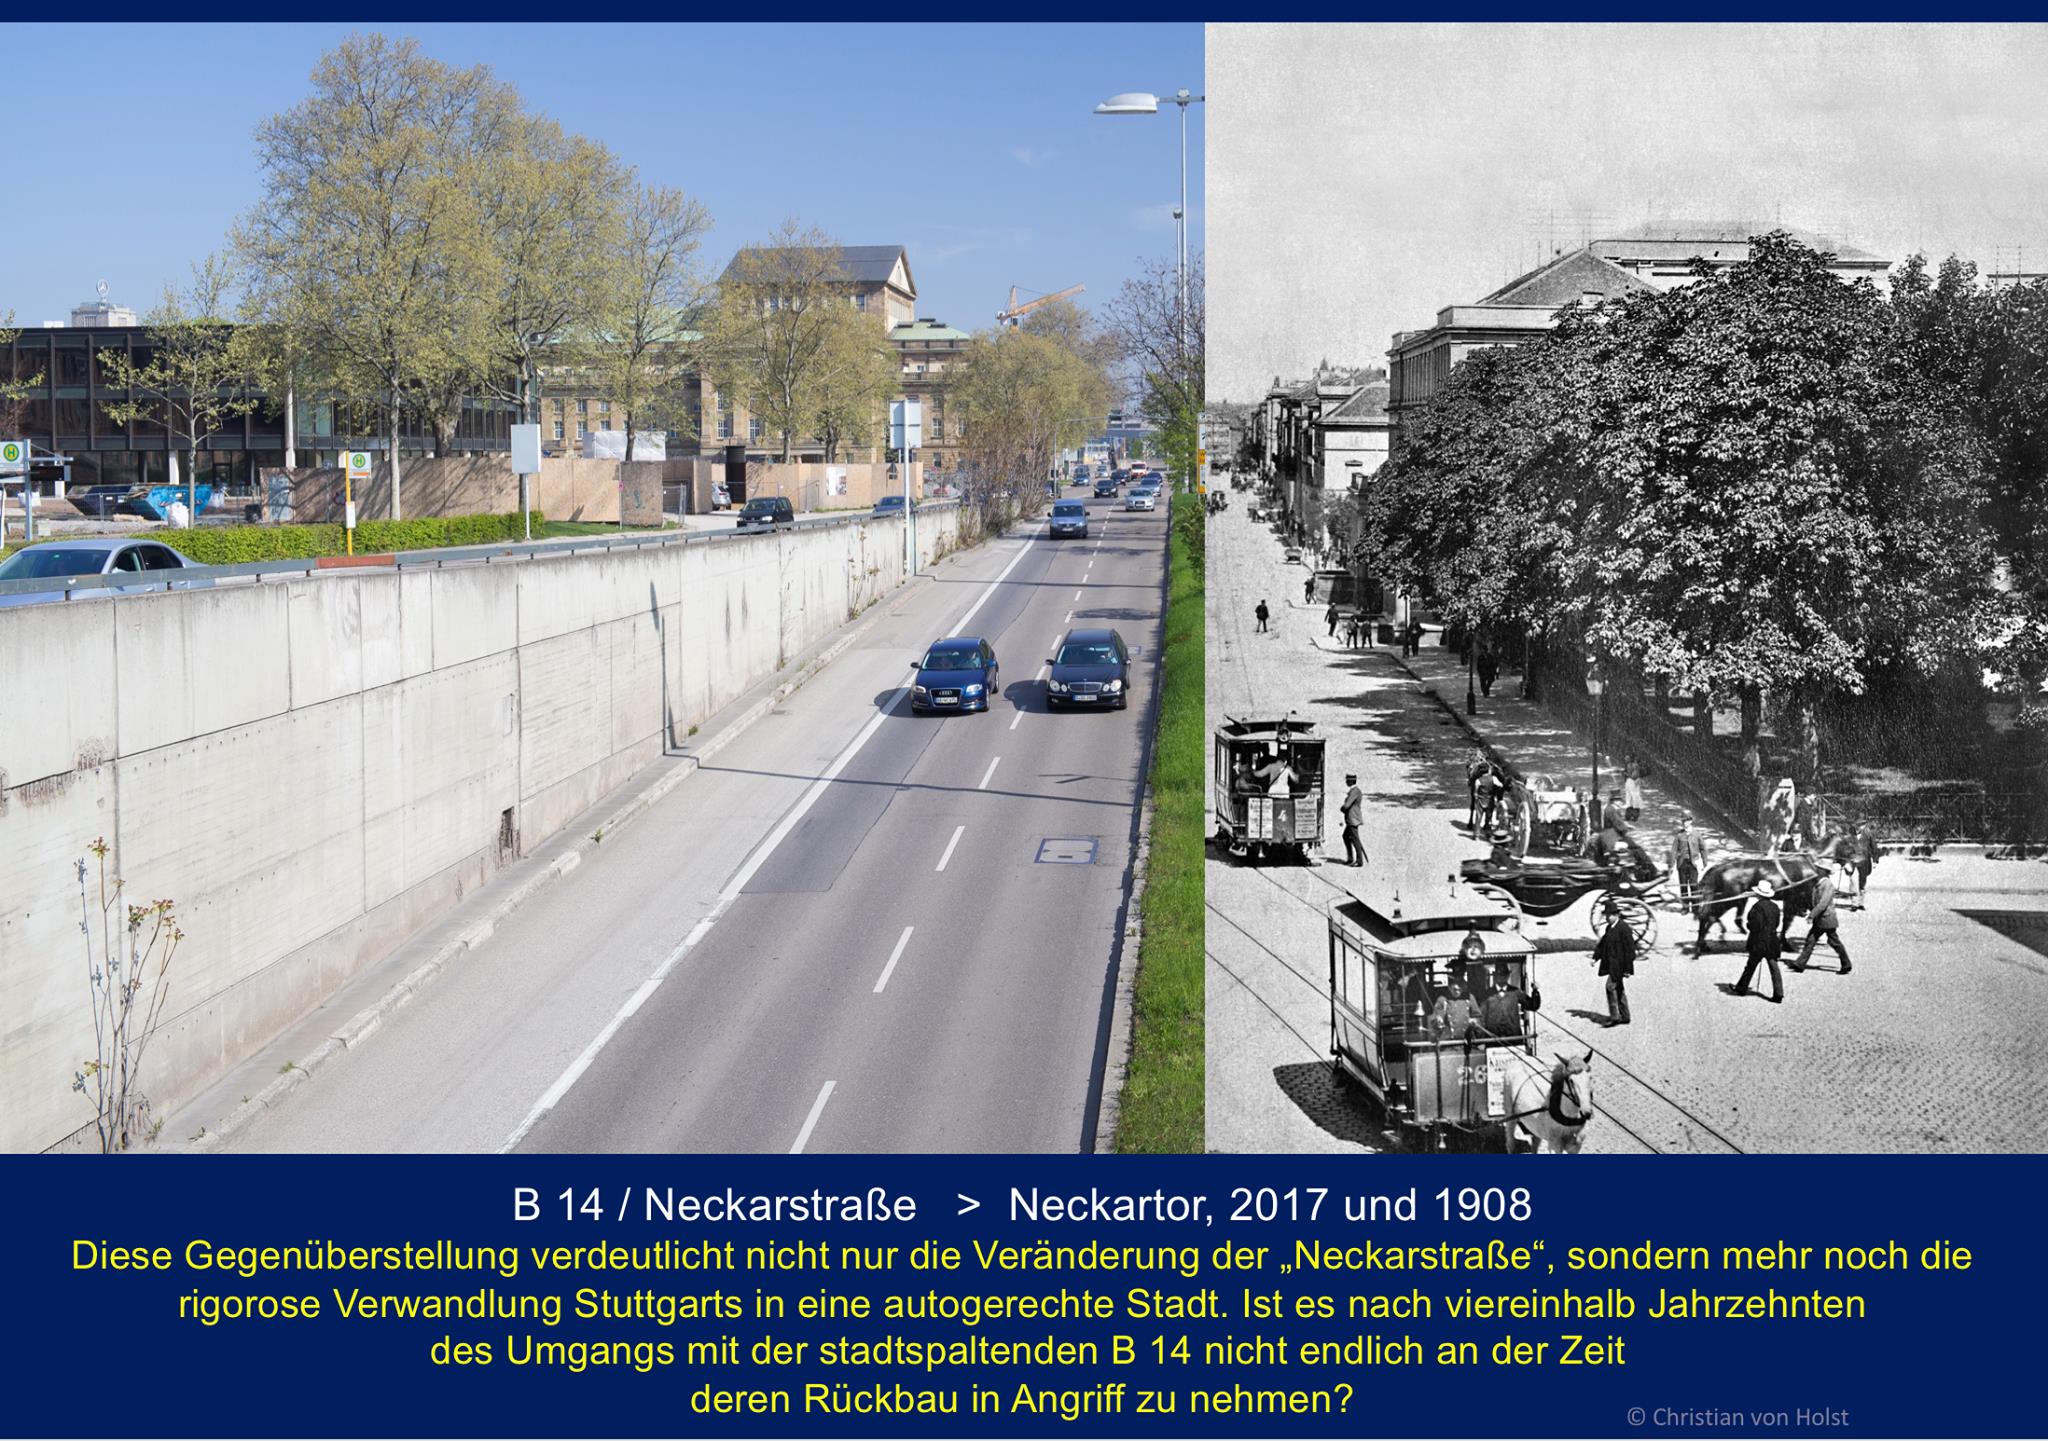 Stuttgarts B14 von heute in Fotomontage mit Neckarstraße von 1908